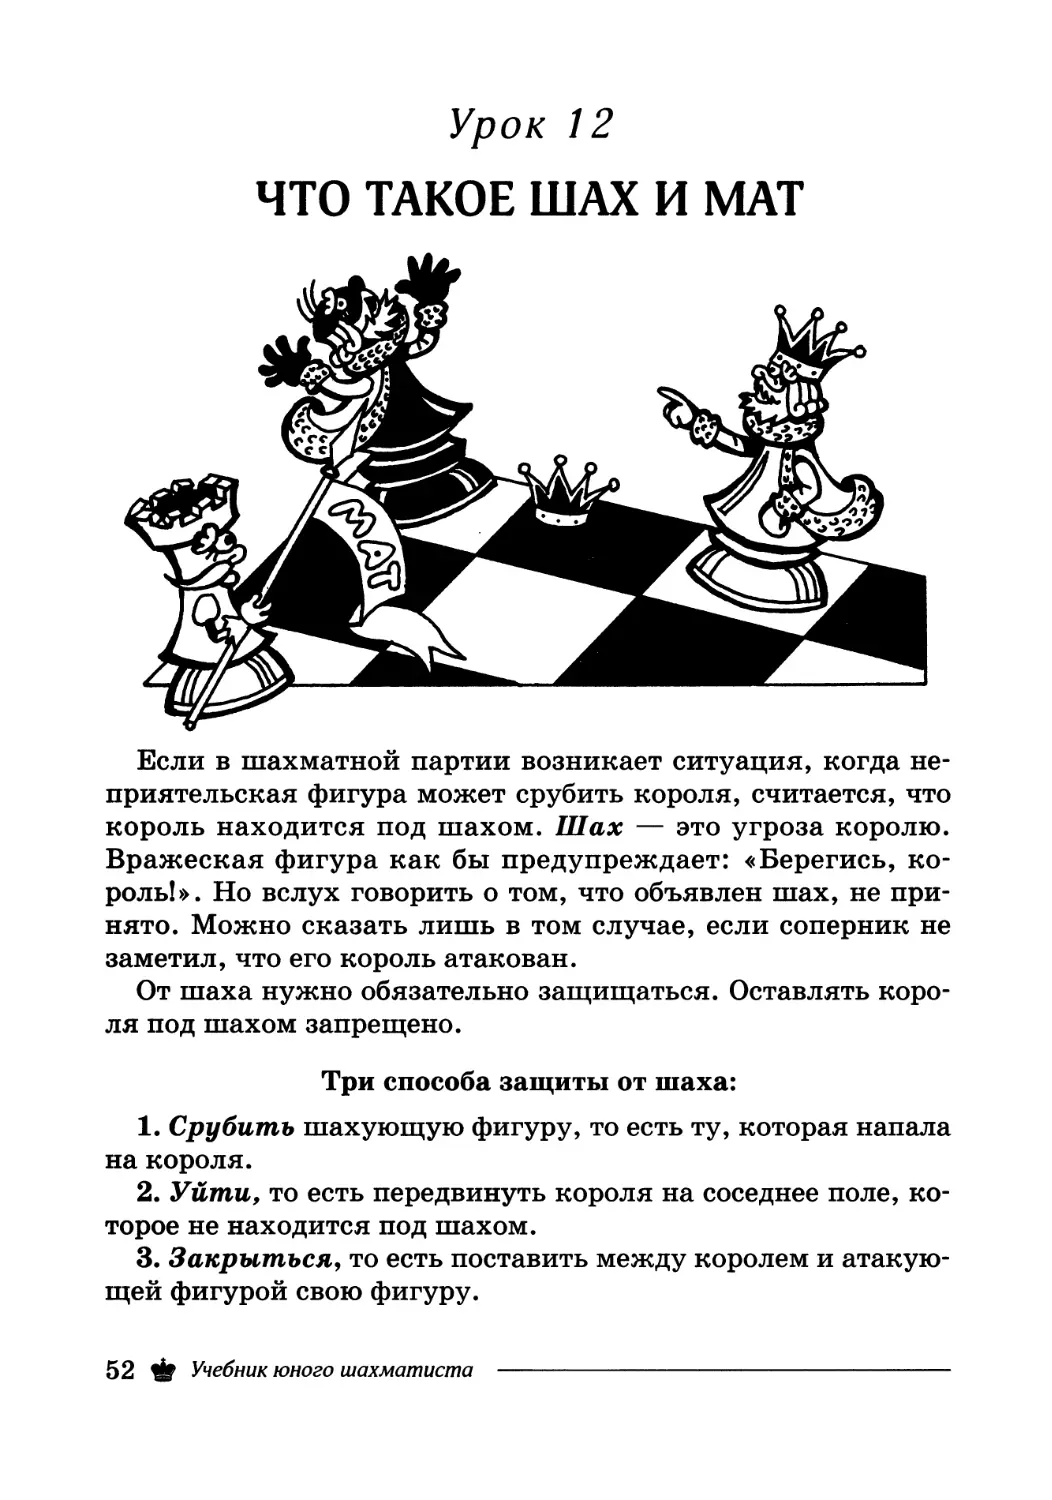 Урок 12. Что такое шах и мат